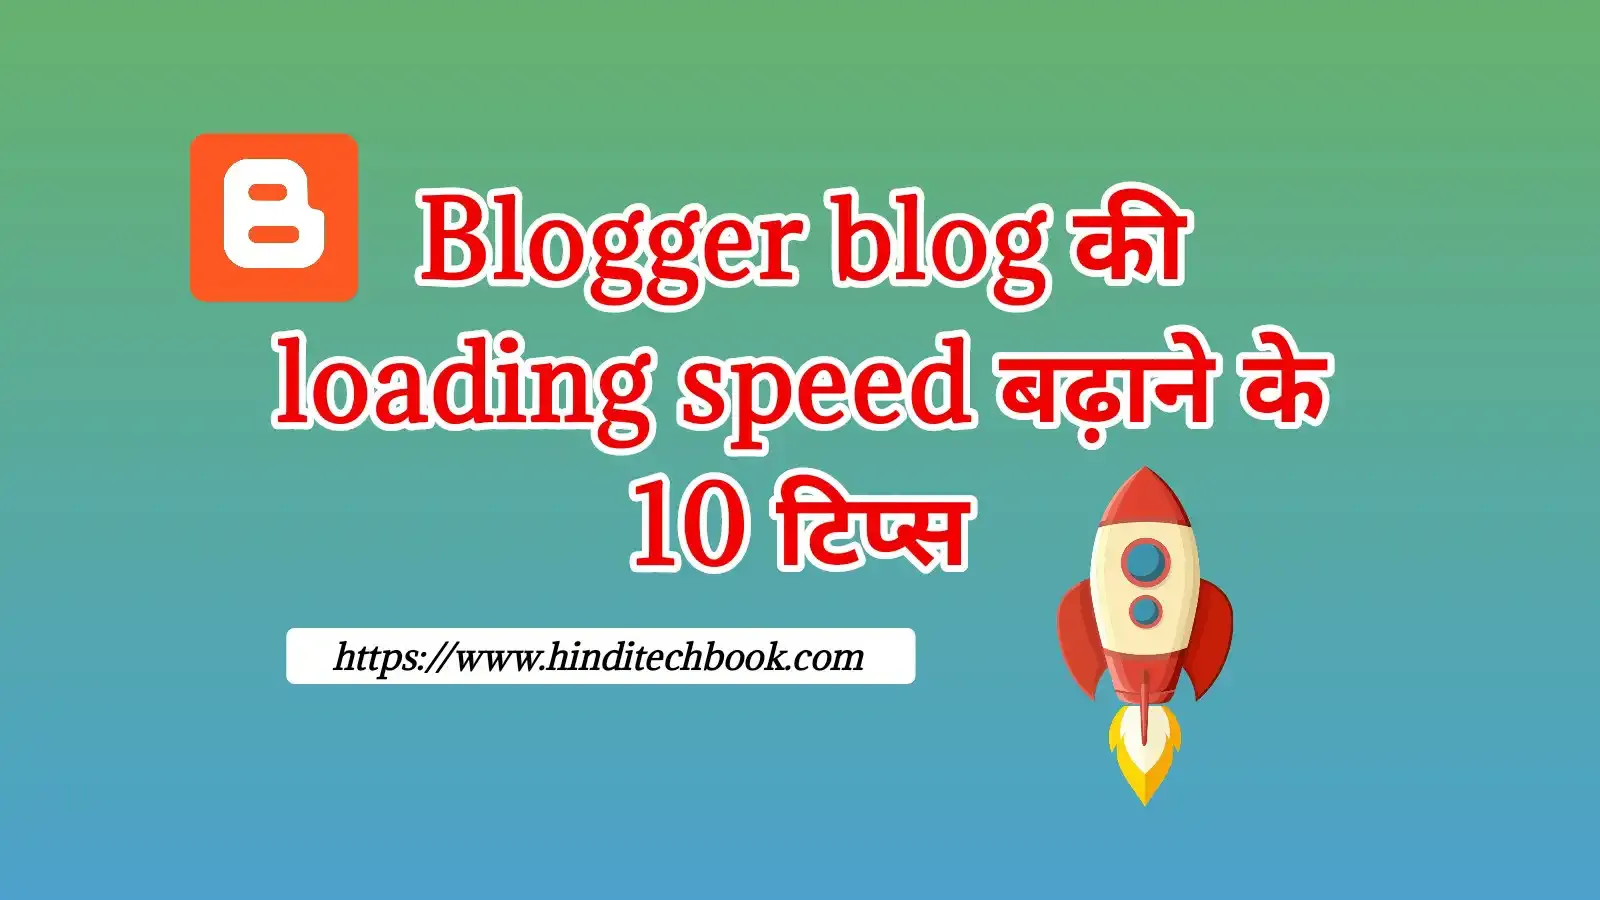 Blogger blog की loading speed बढ़ाने के 10 टिप्स